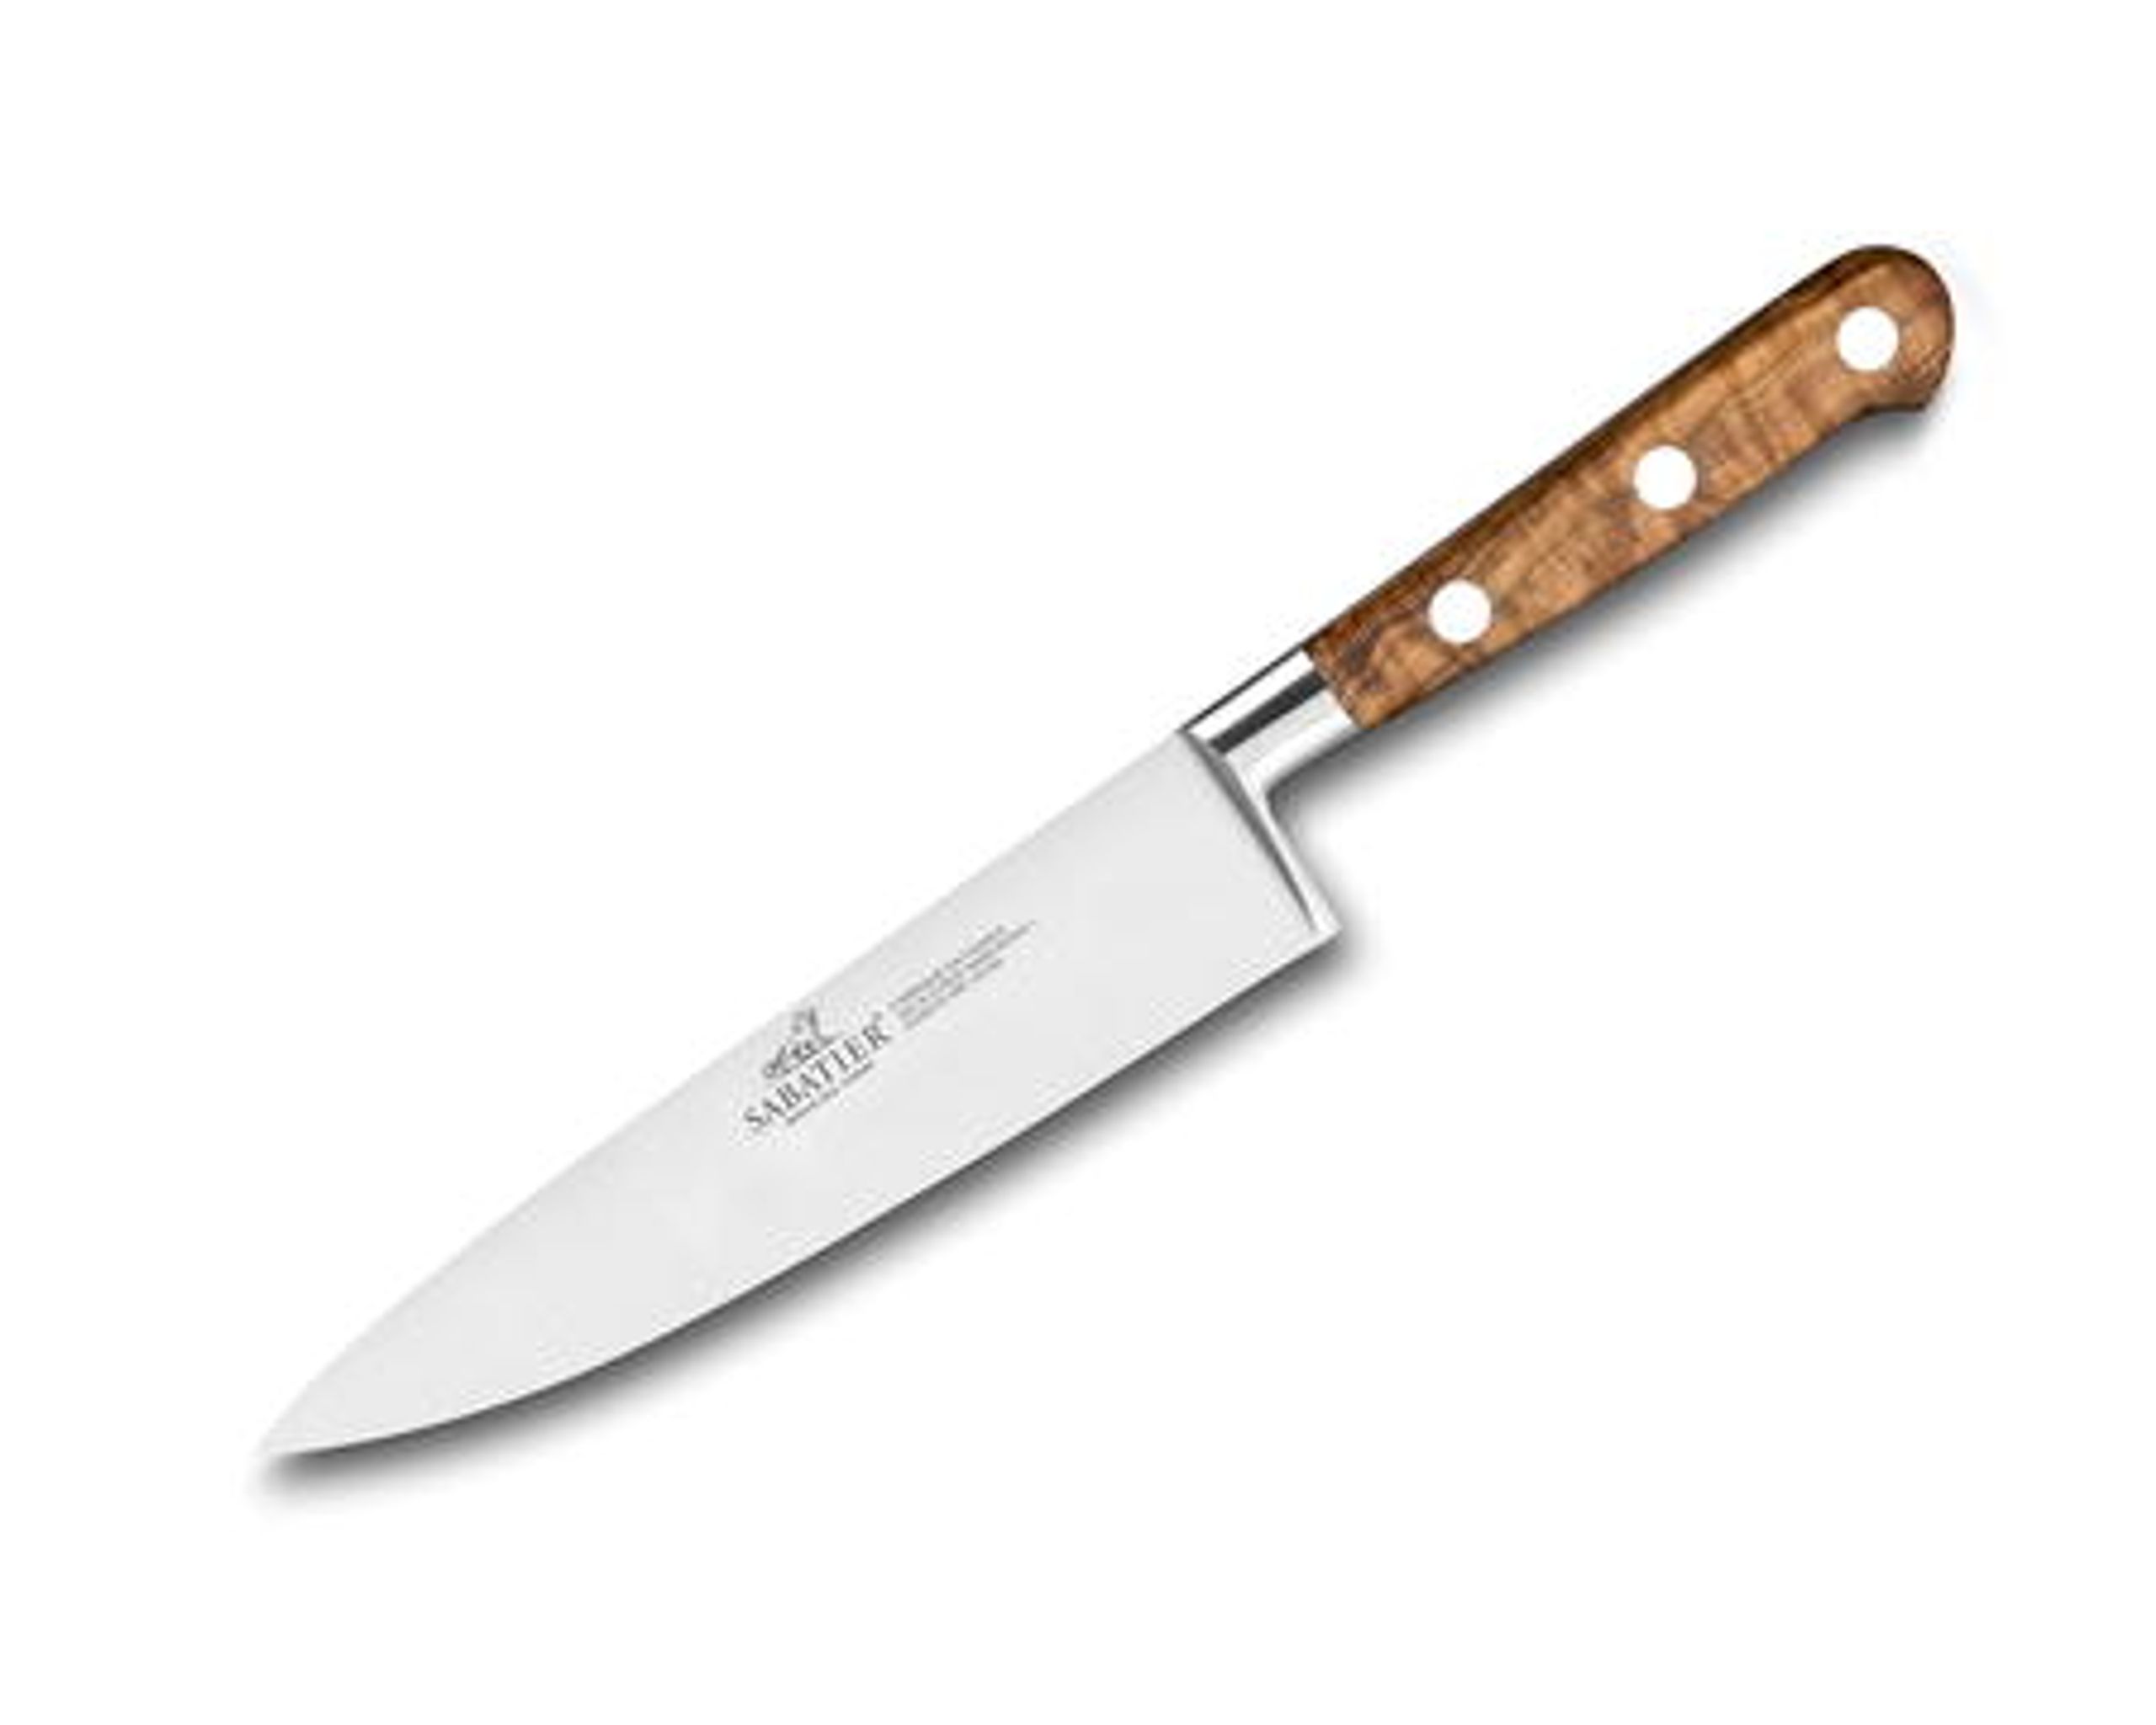 Lion Sabatier - Couteau - Lion Sabatier Ideal Provence knife series - Chef knife 15 cm